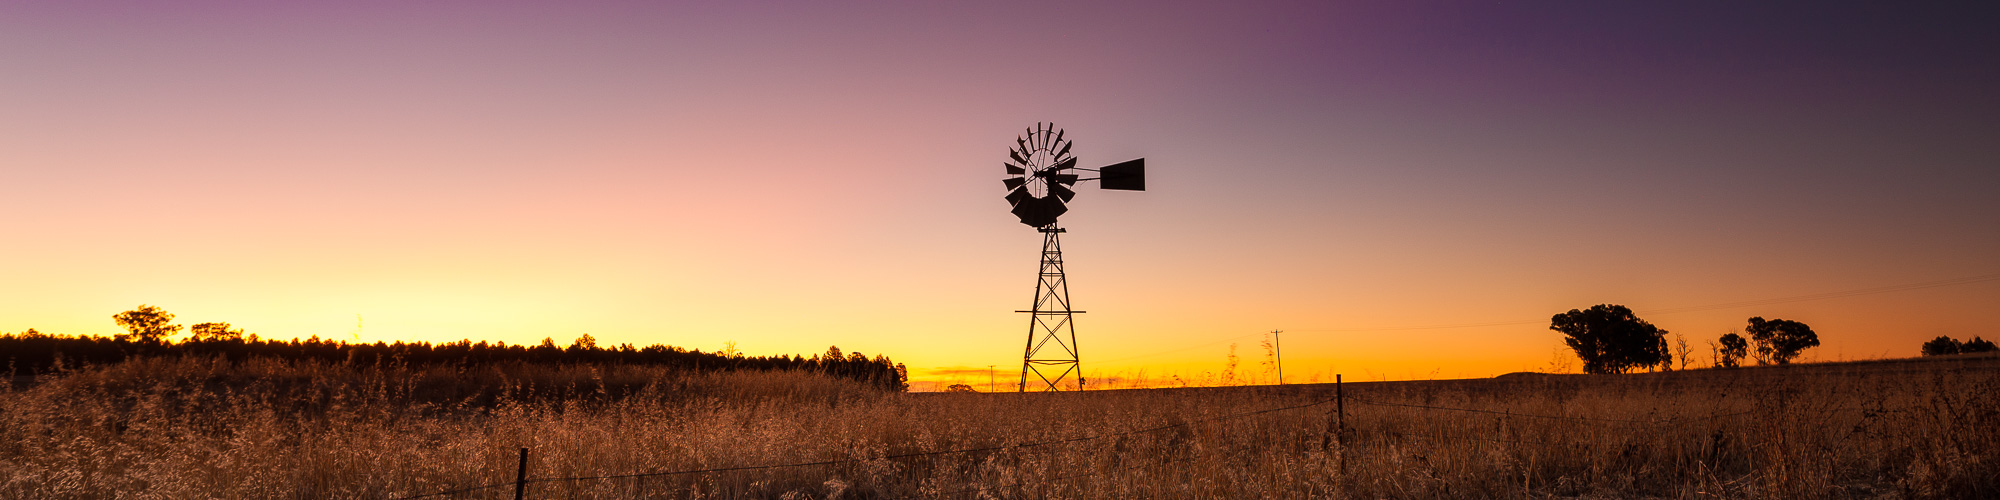 Windmill. Parkes, NSW.